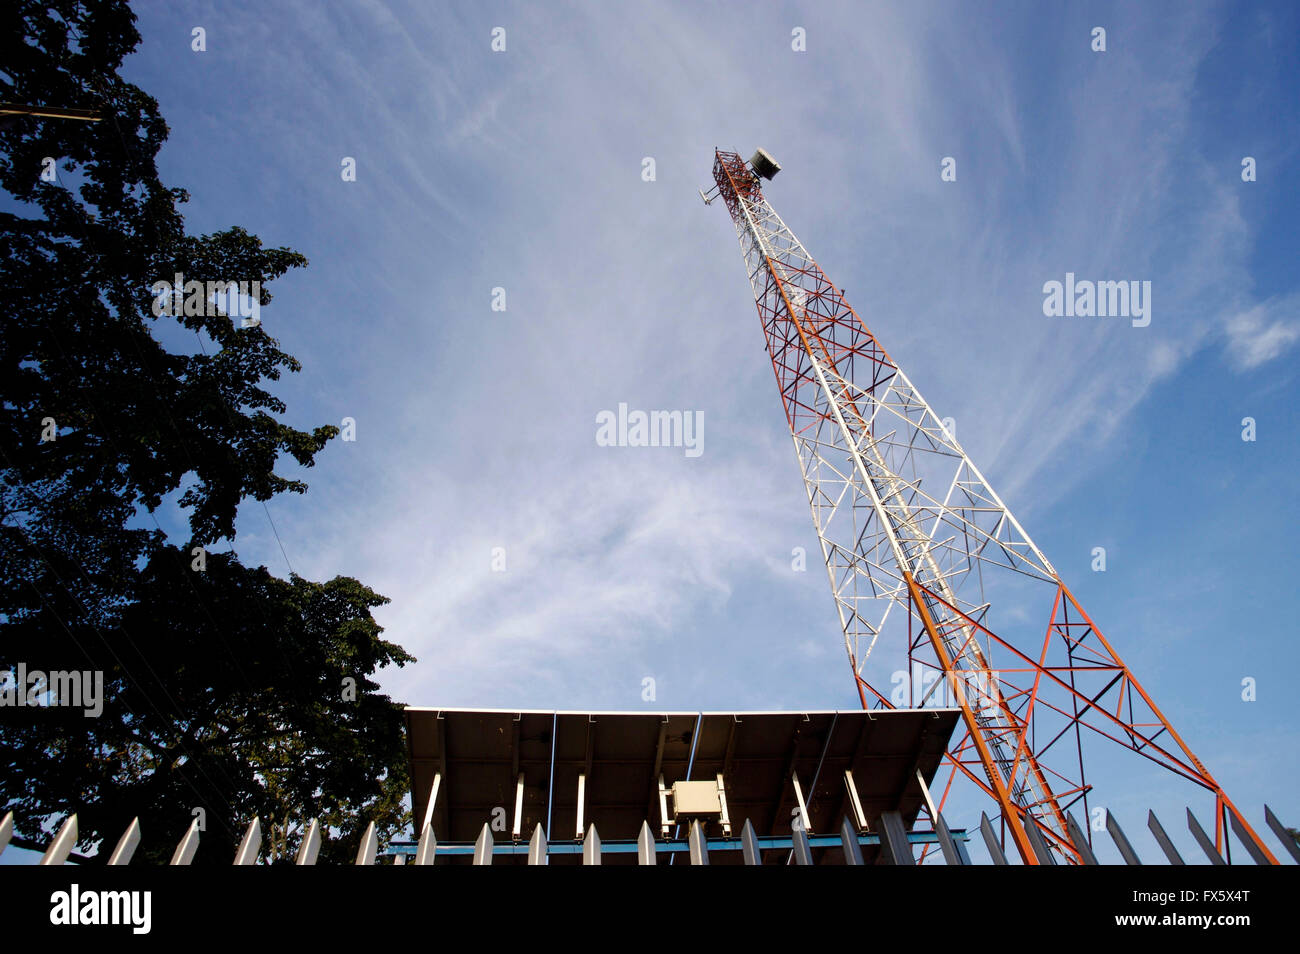 Mobile telecoms mast in Uganda, Africa Stock Photo